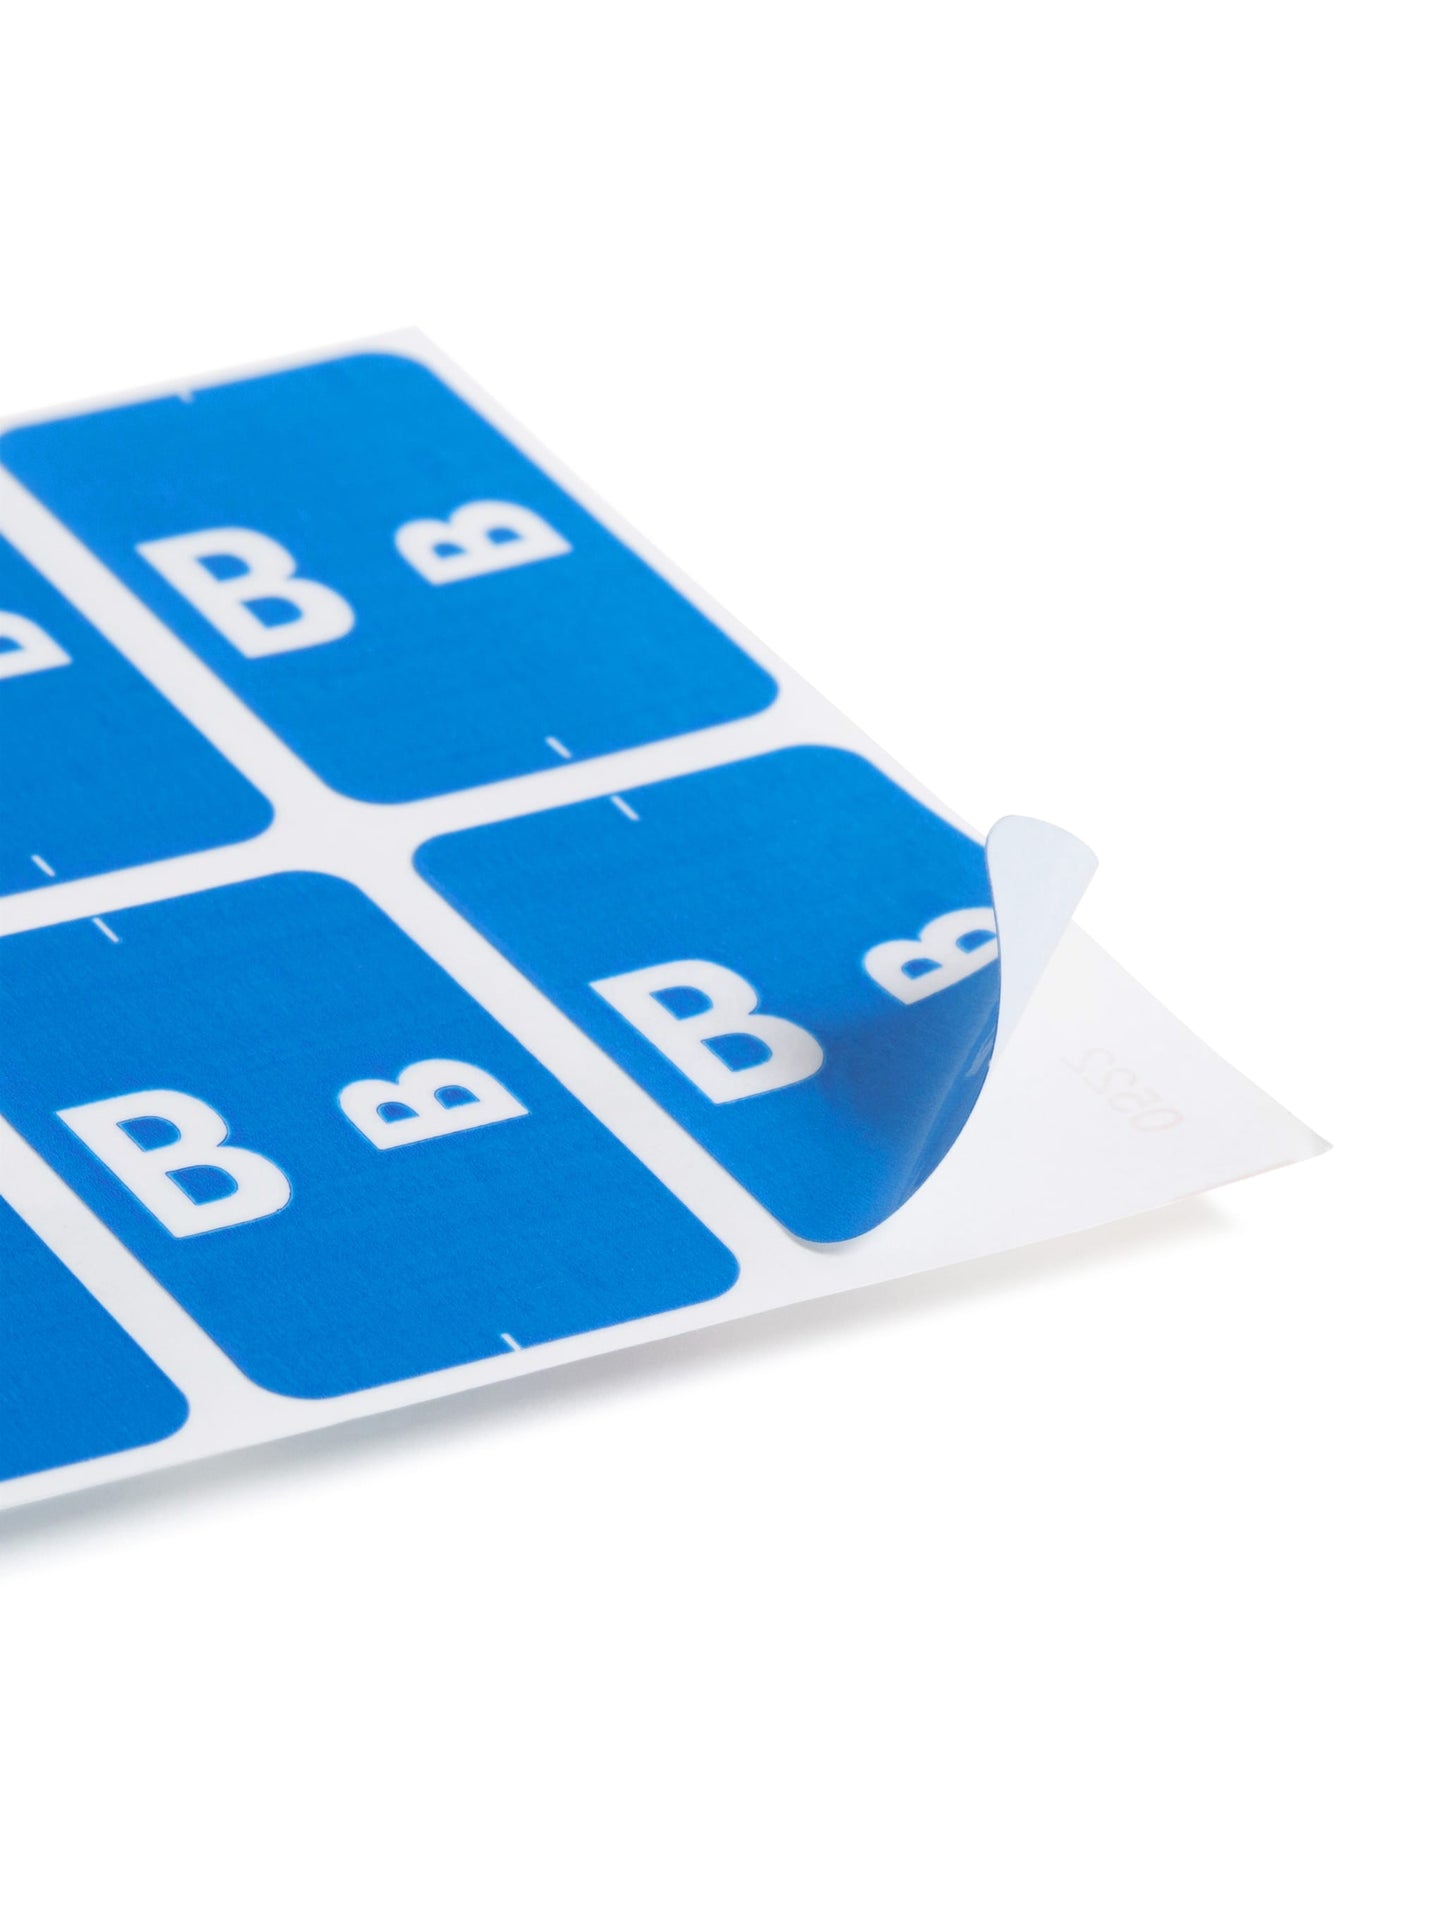 AlphaZ® ACCS Color Coded Alphabetic Labels - Sheets, Dark Blue Color, 1" X 1-5/8" Size, 